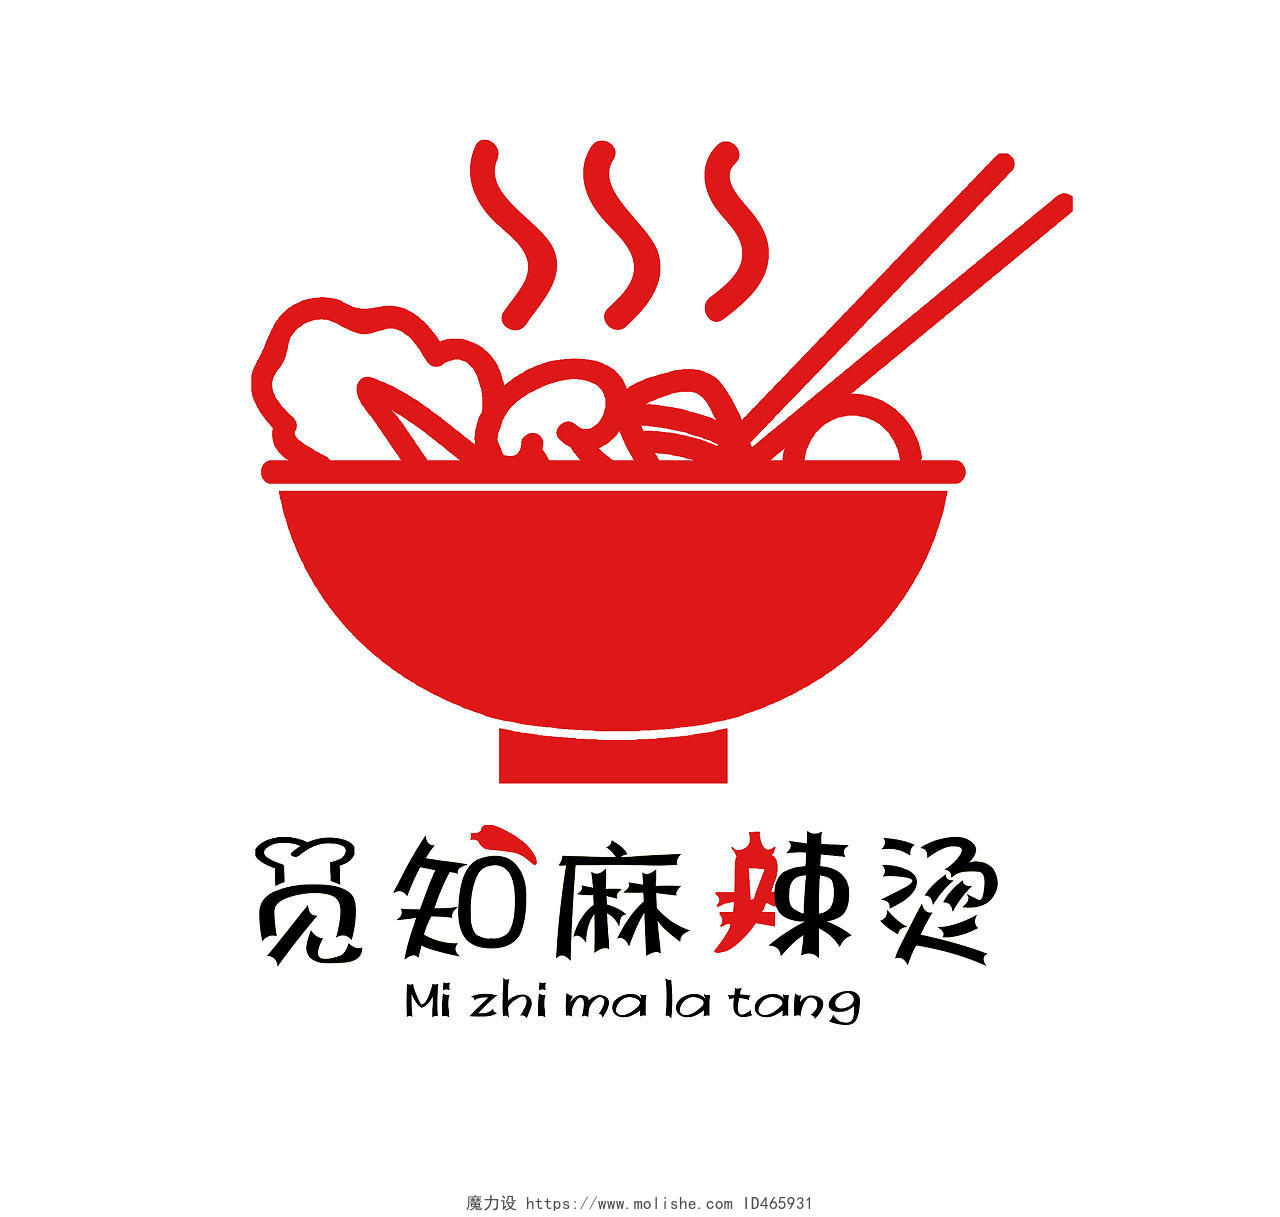 红色剪影几何图形麻辣烫餐饮logo